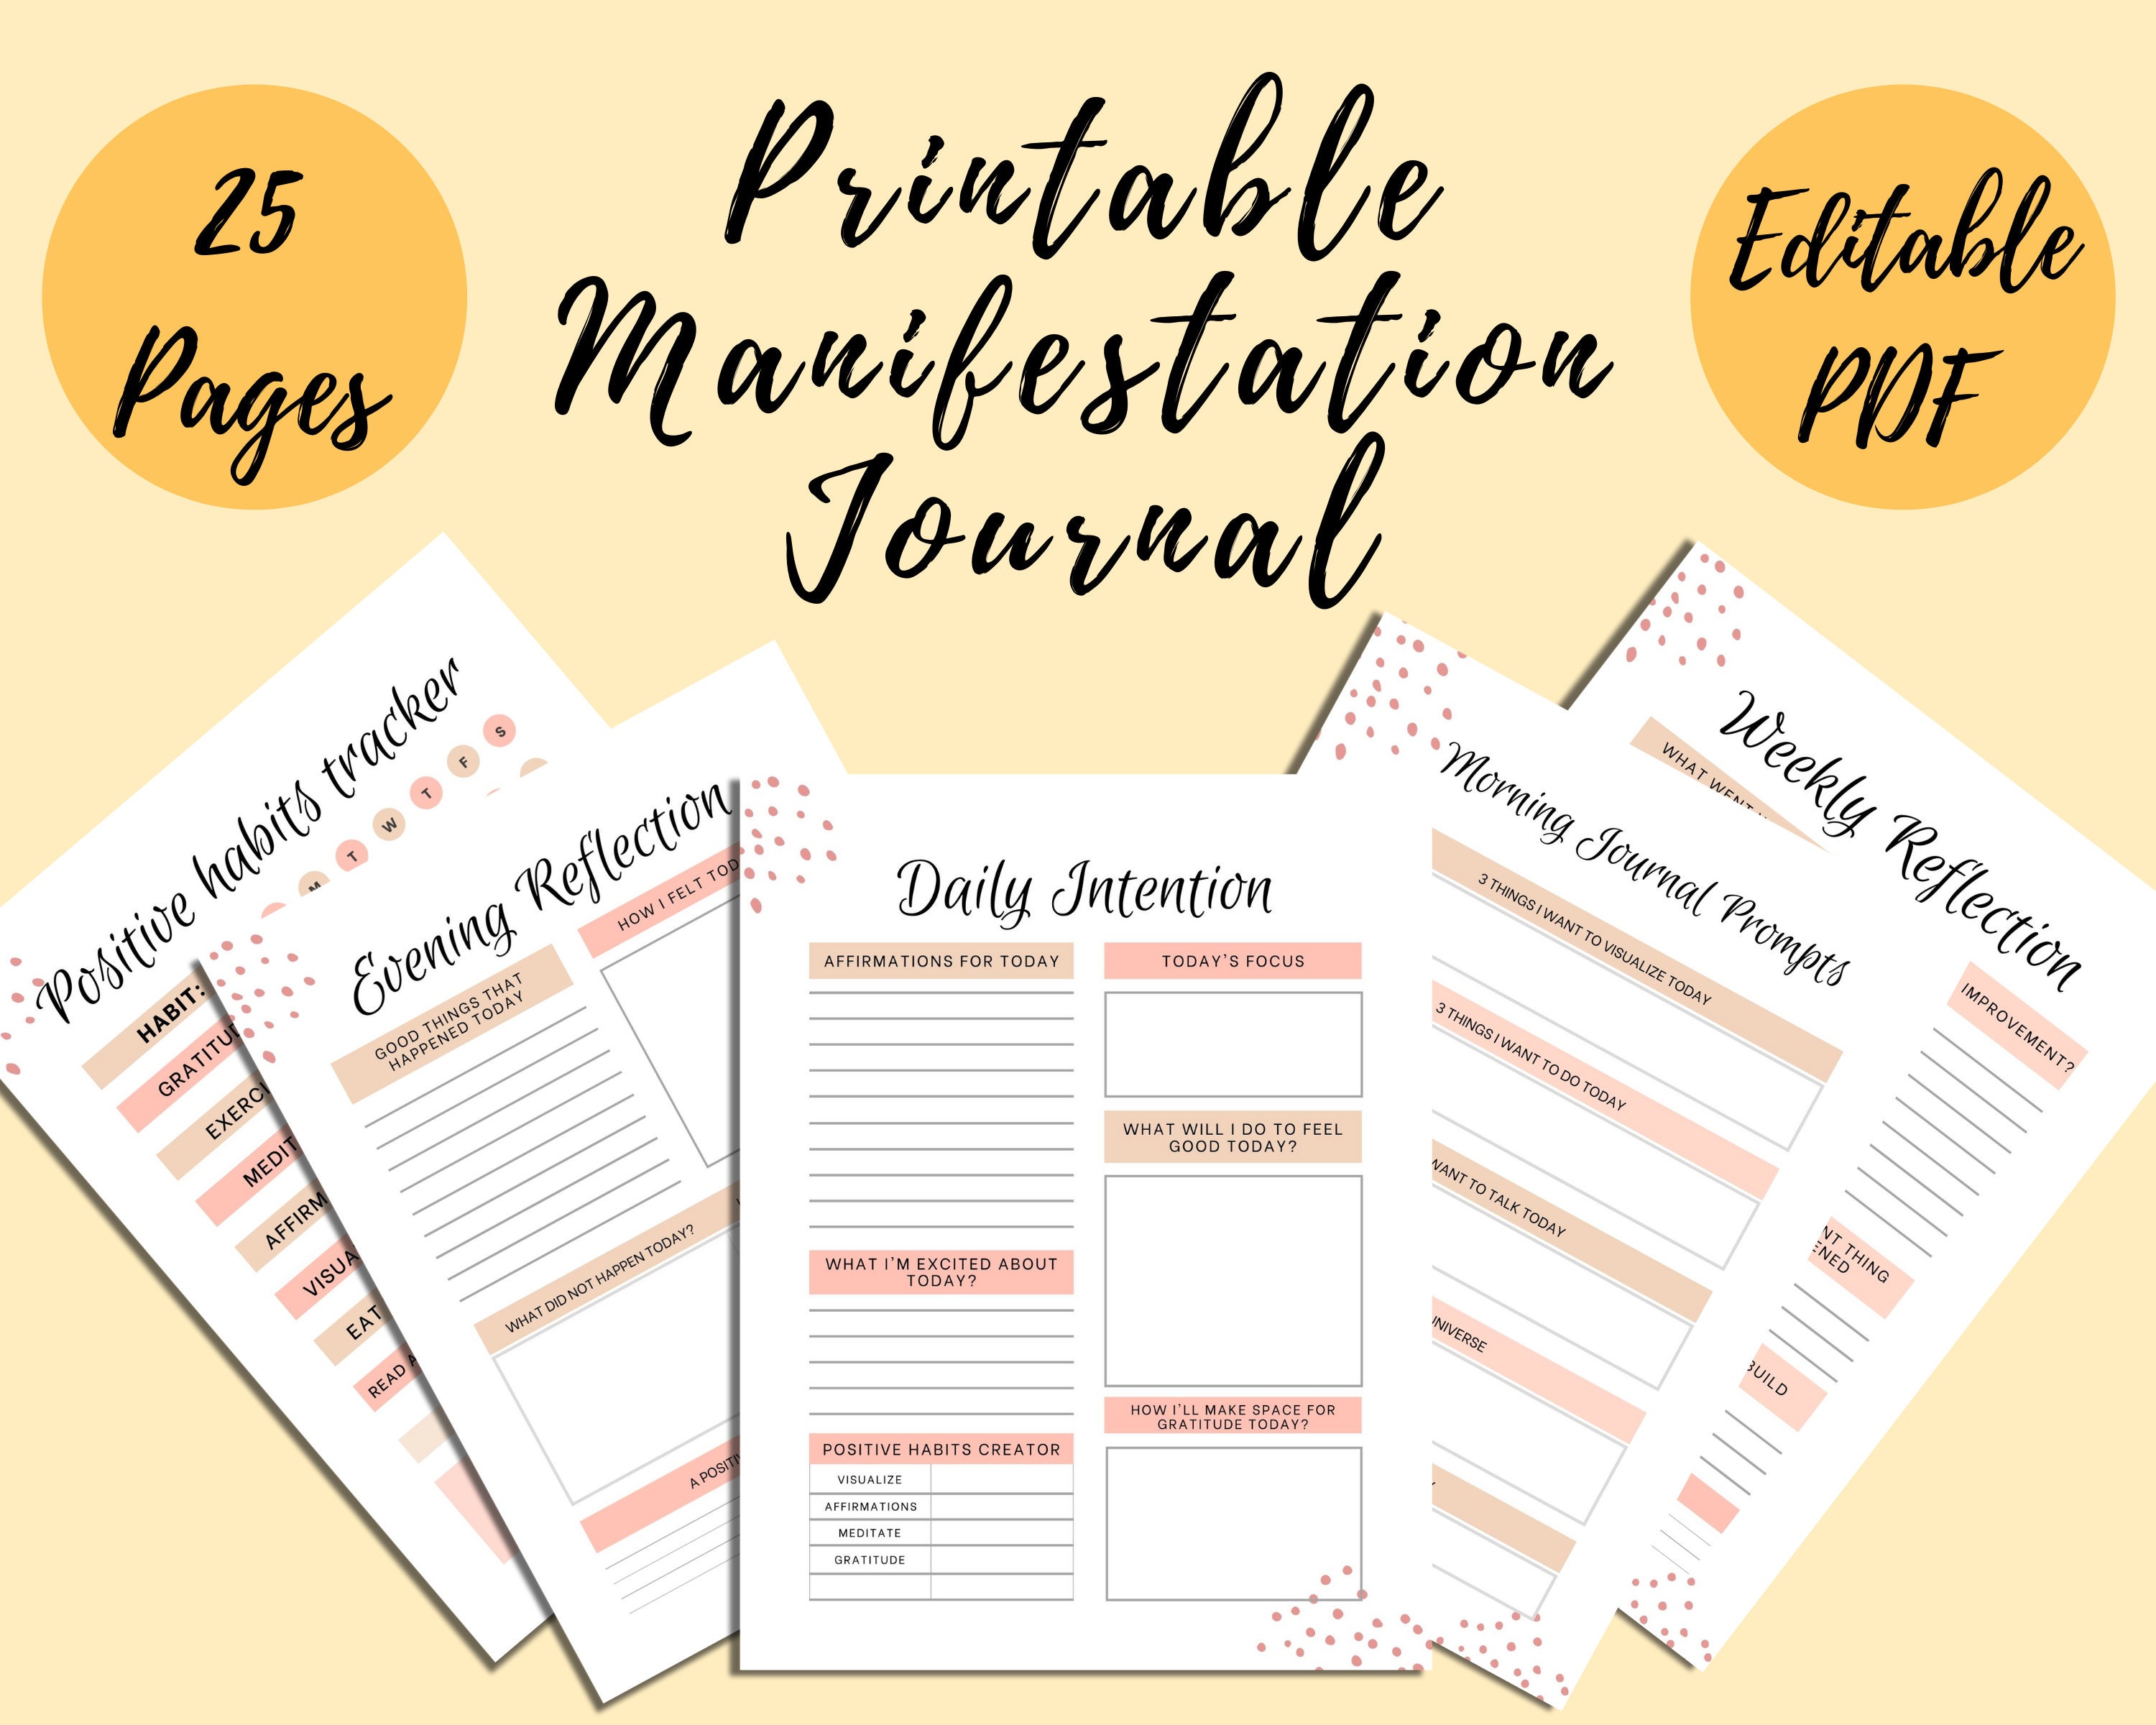 manifest journal ideas